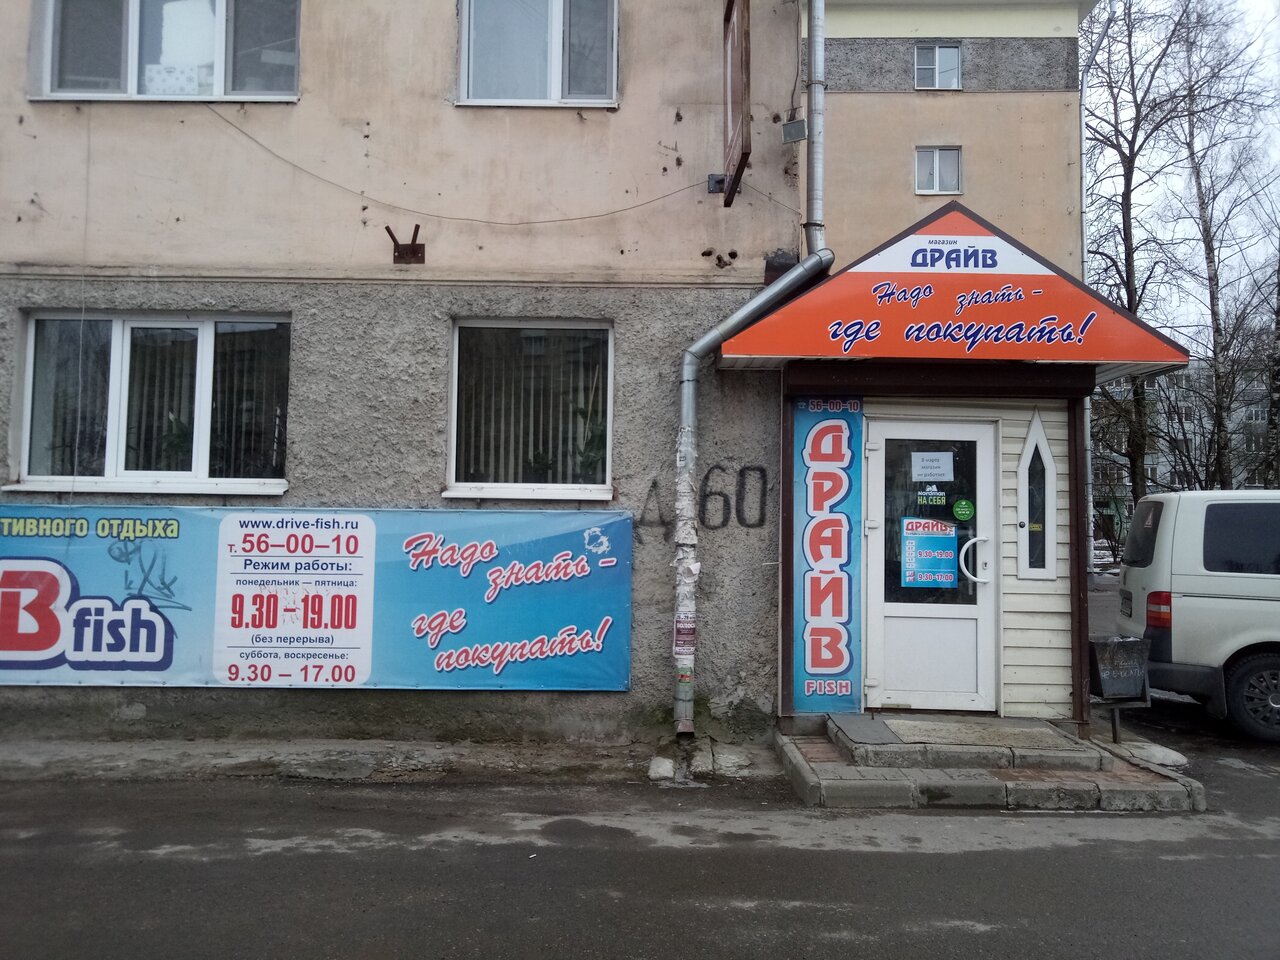 Магазин снаряжения "Драйв Fish" на Рижском проспекте в Пскове